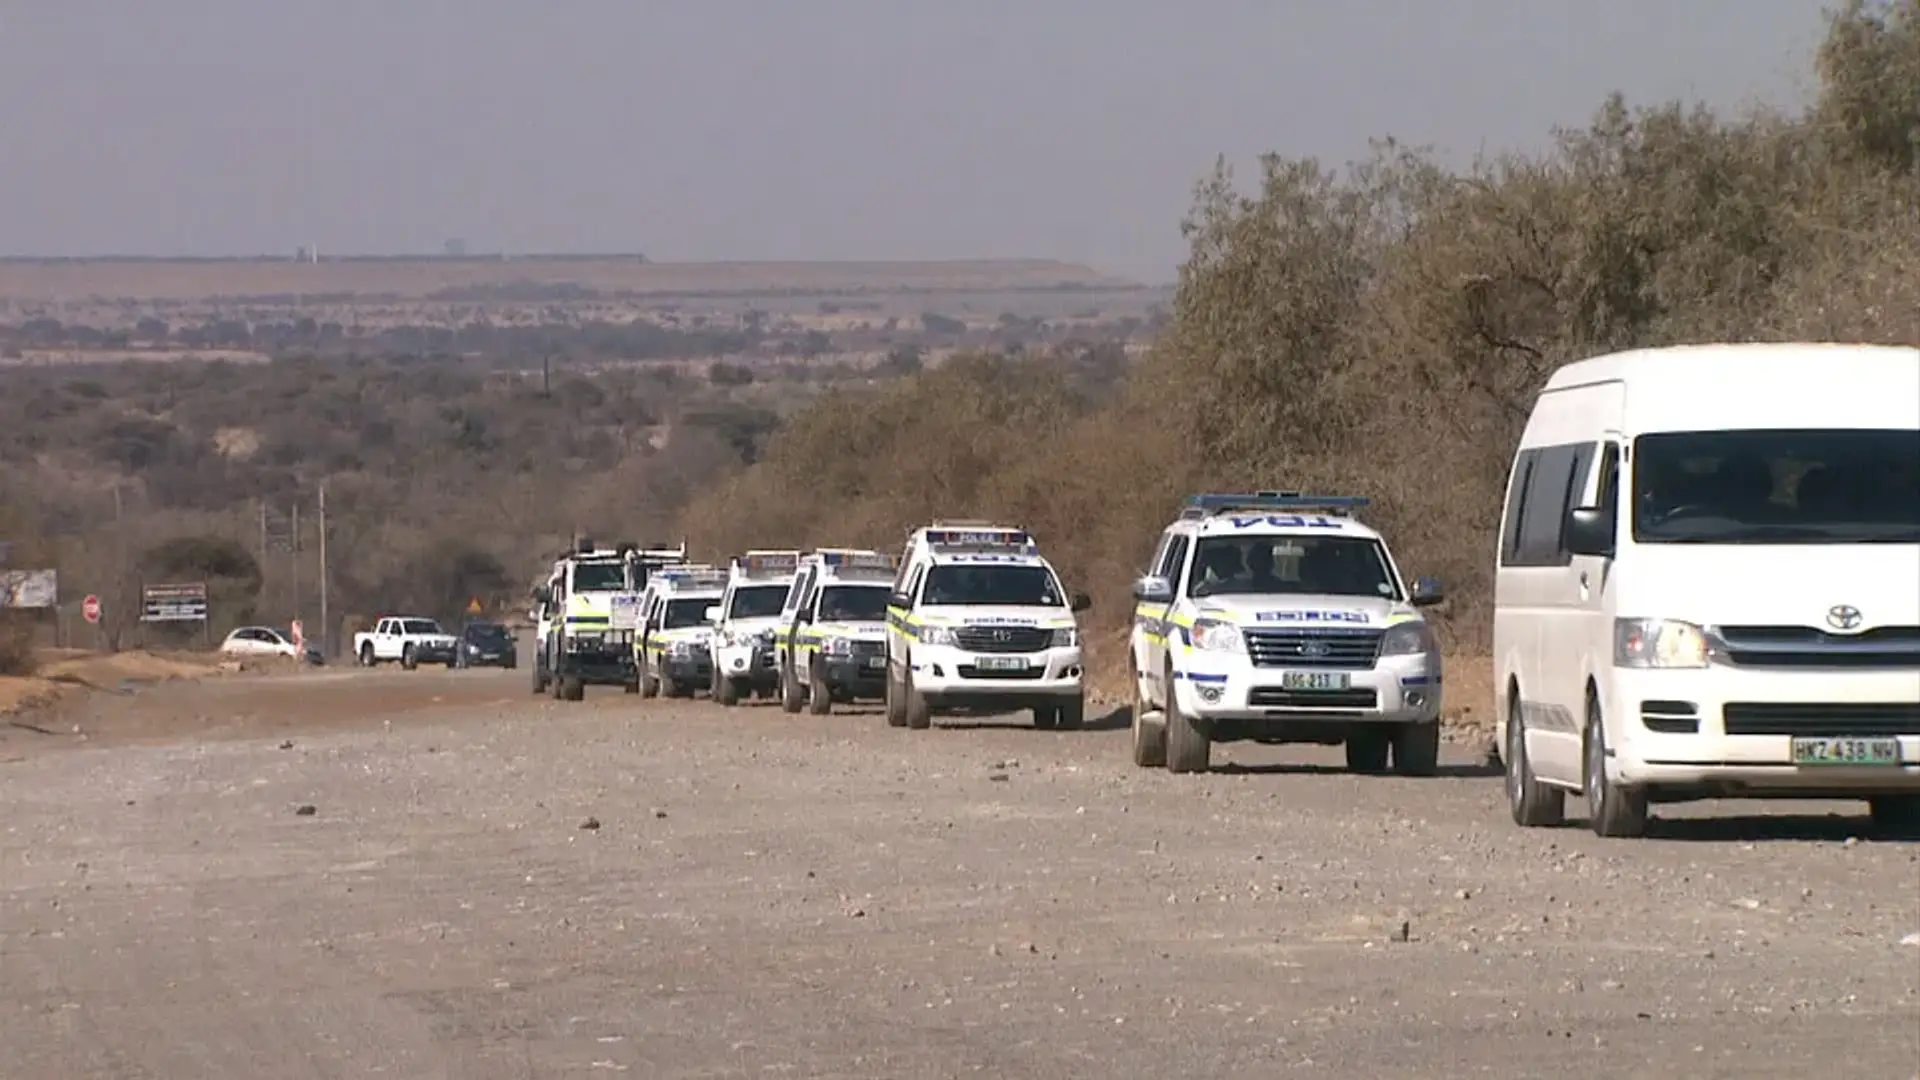 A police convoy